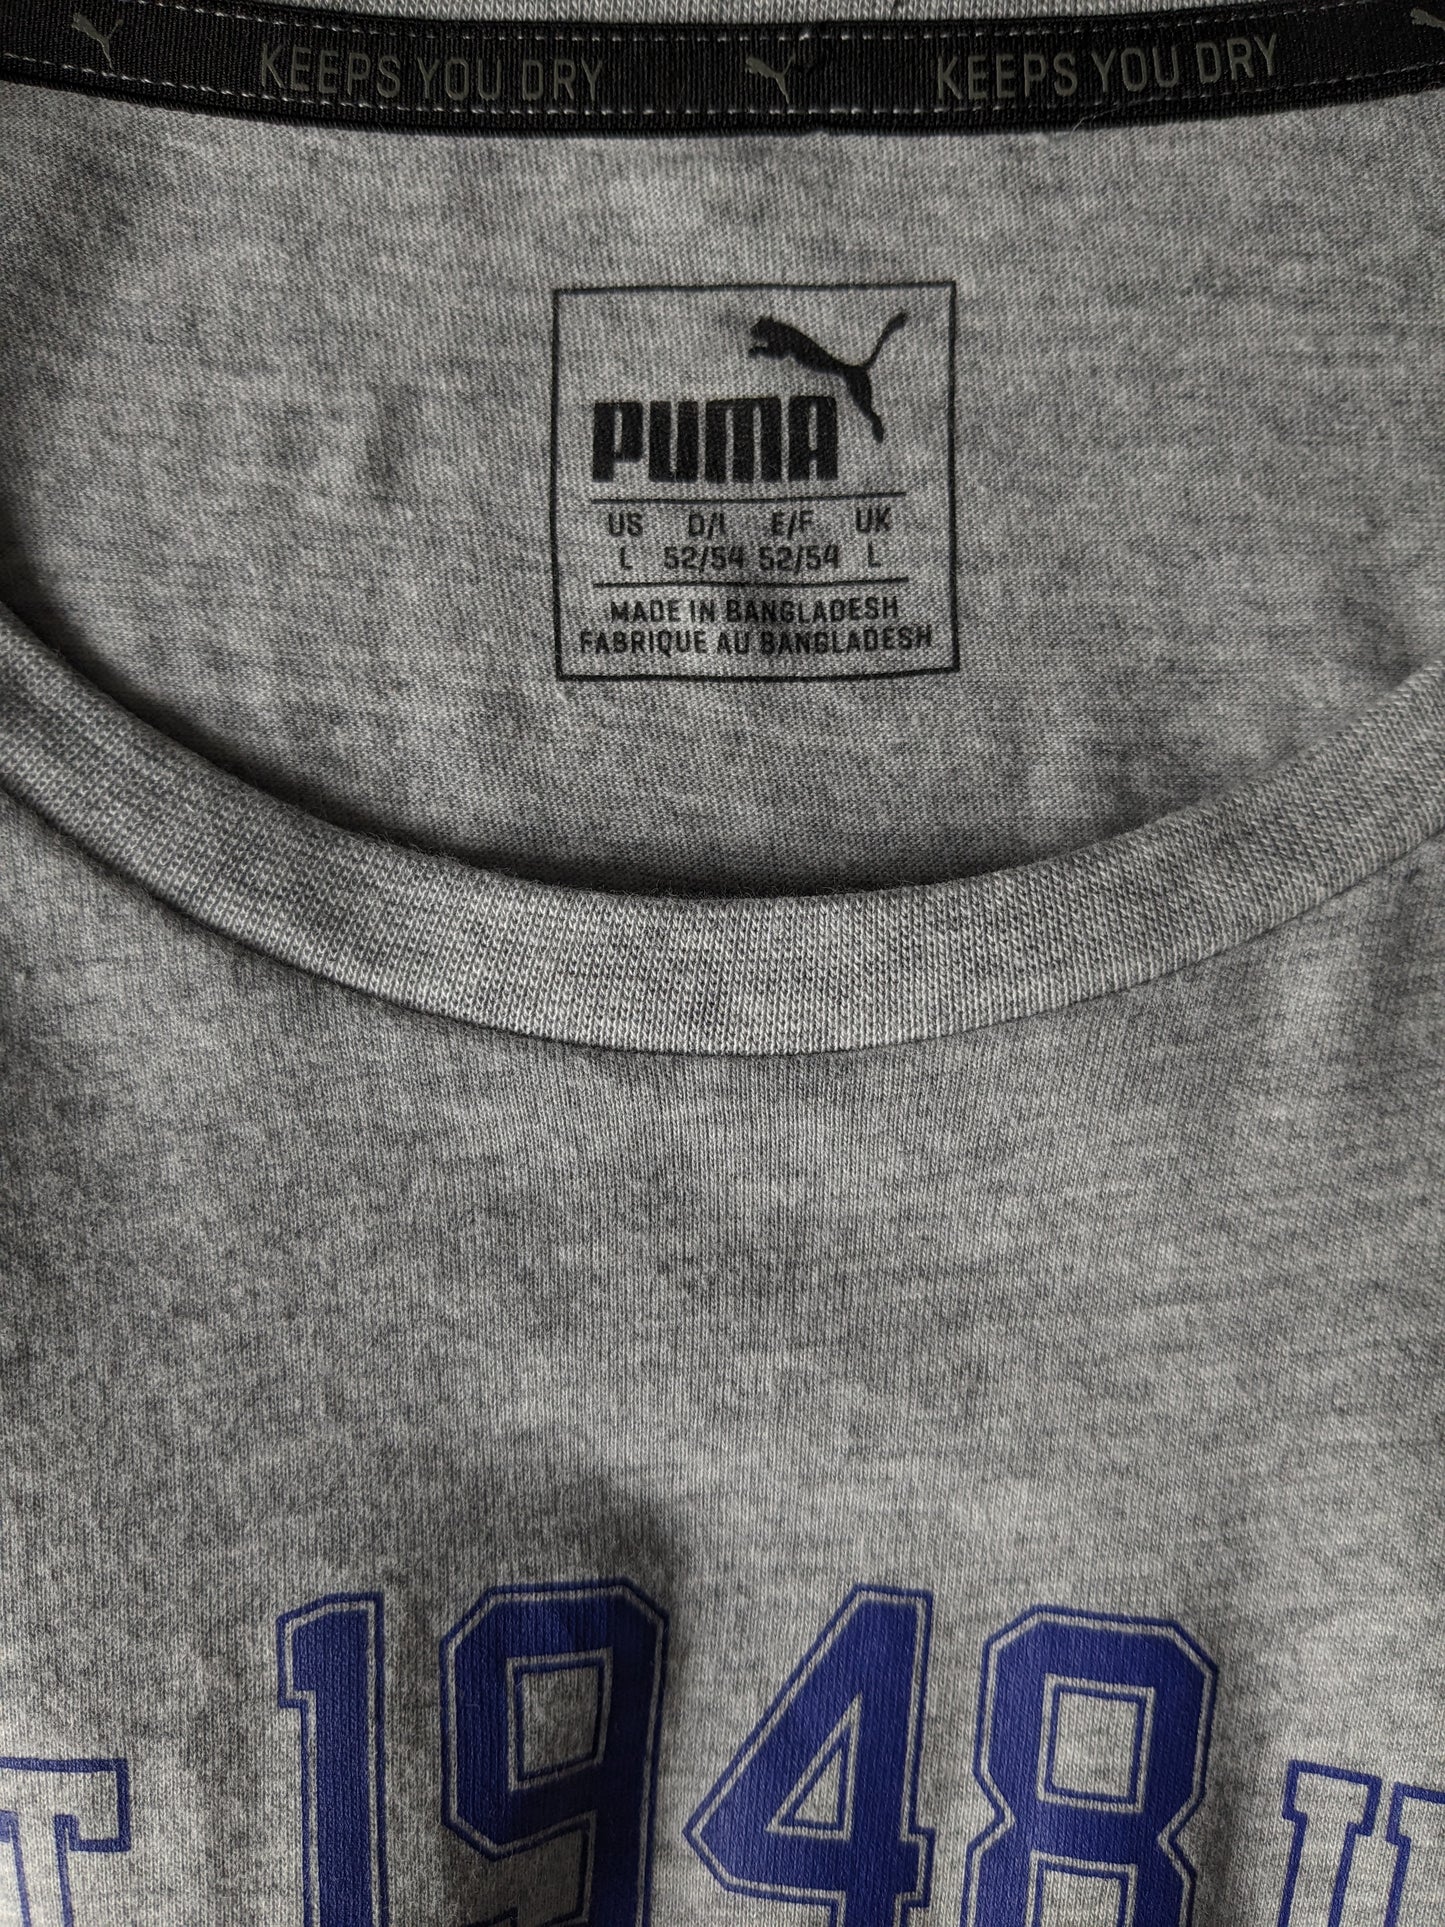 Puma -Hemd. Grau mit Druck gemischt. Größe L.